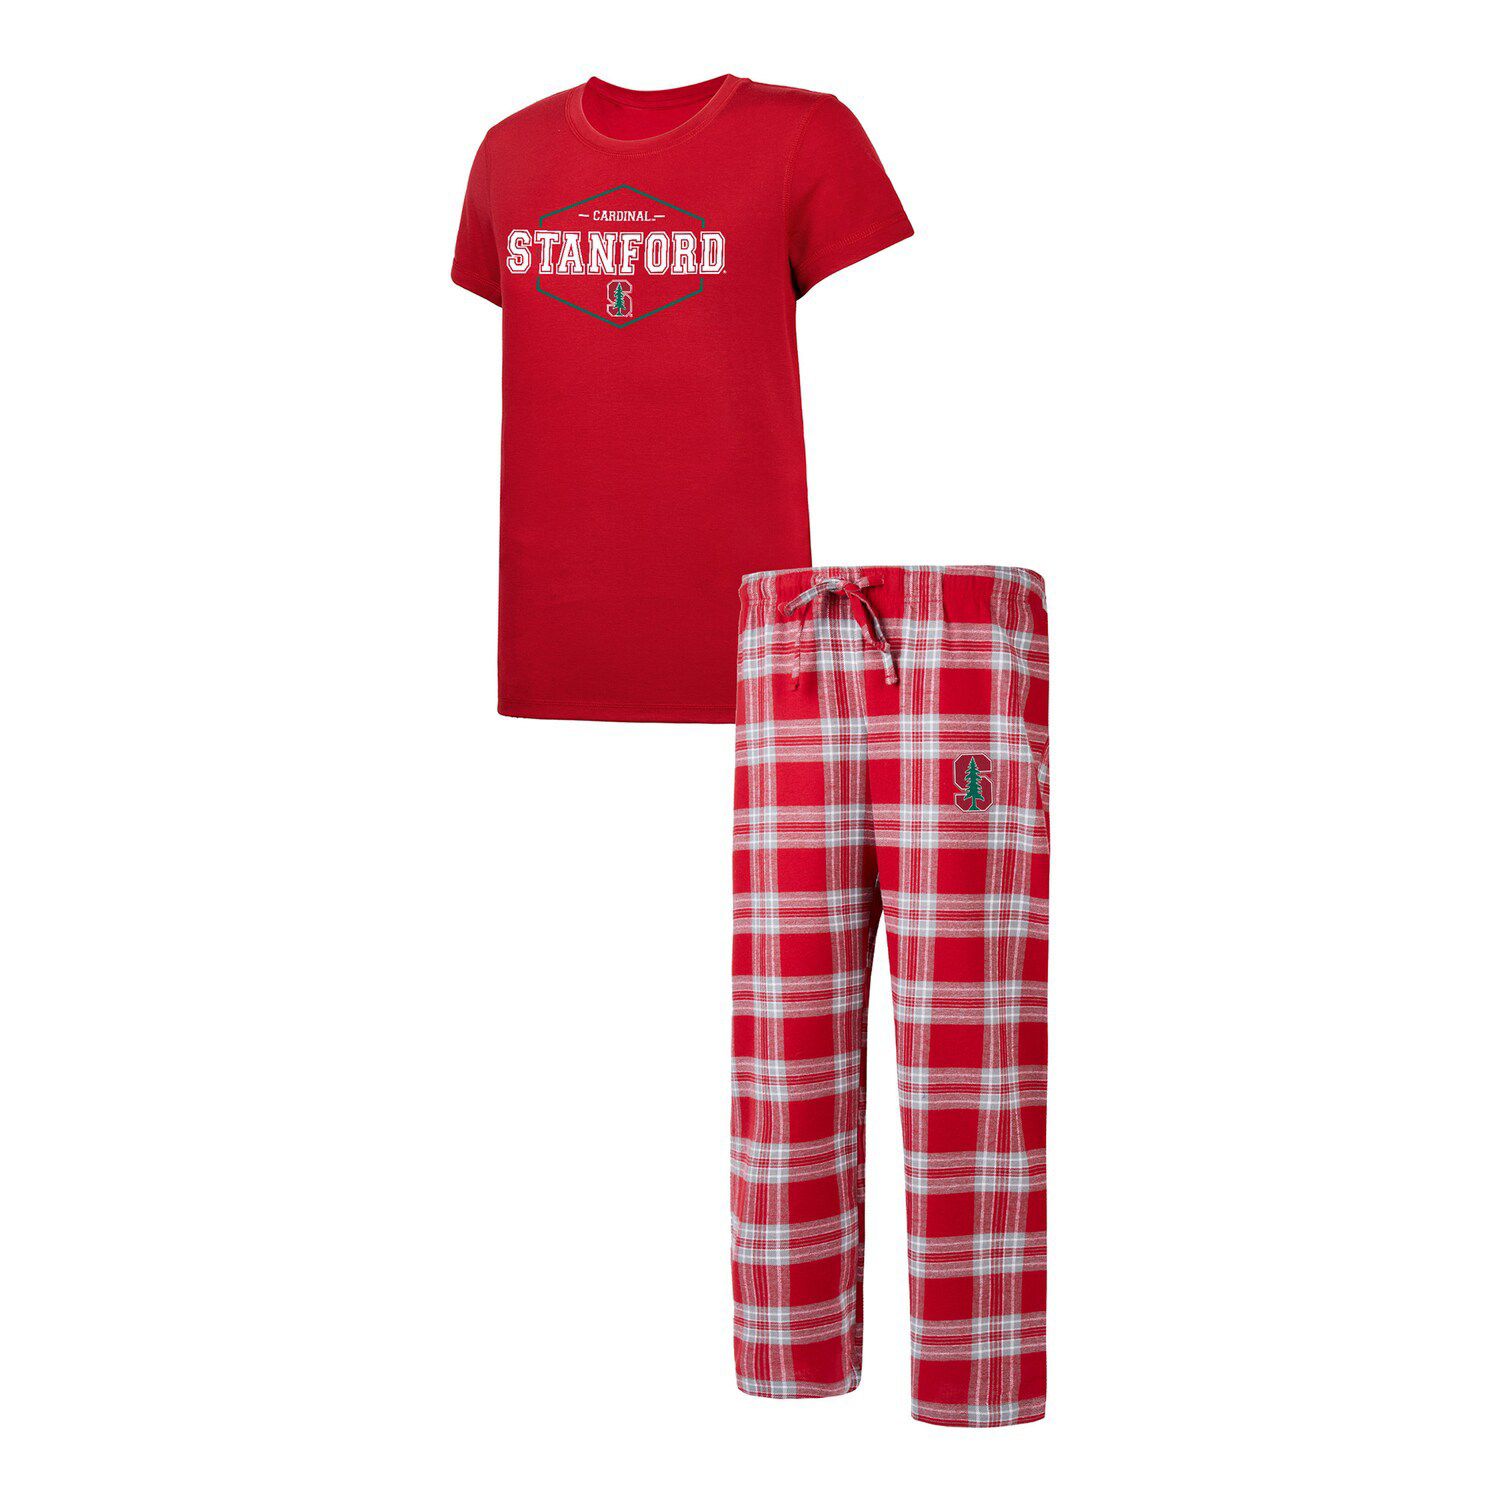 Женская футболка Concepts Sport Cardinal/серая футболка со значком Stanford Cardinal и фланелевые брюки комплект для сна